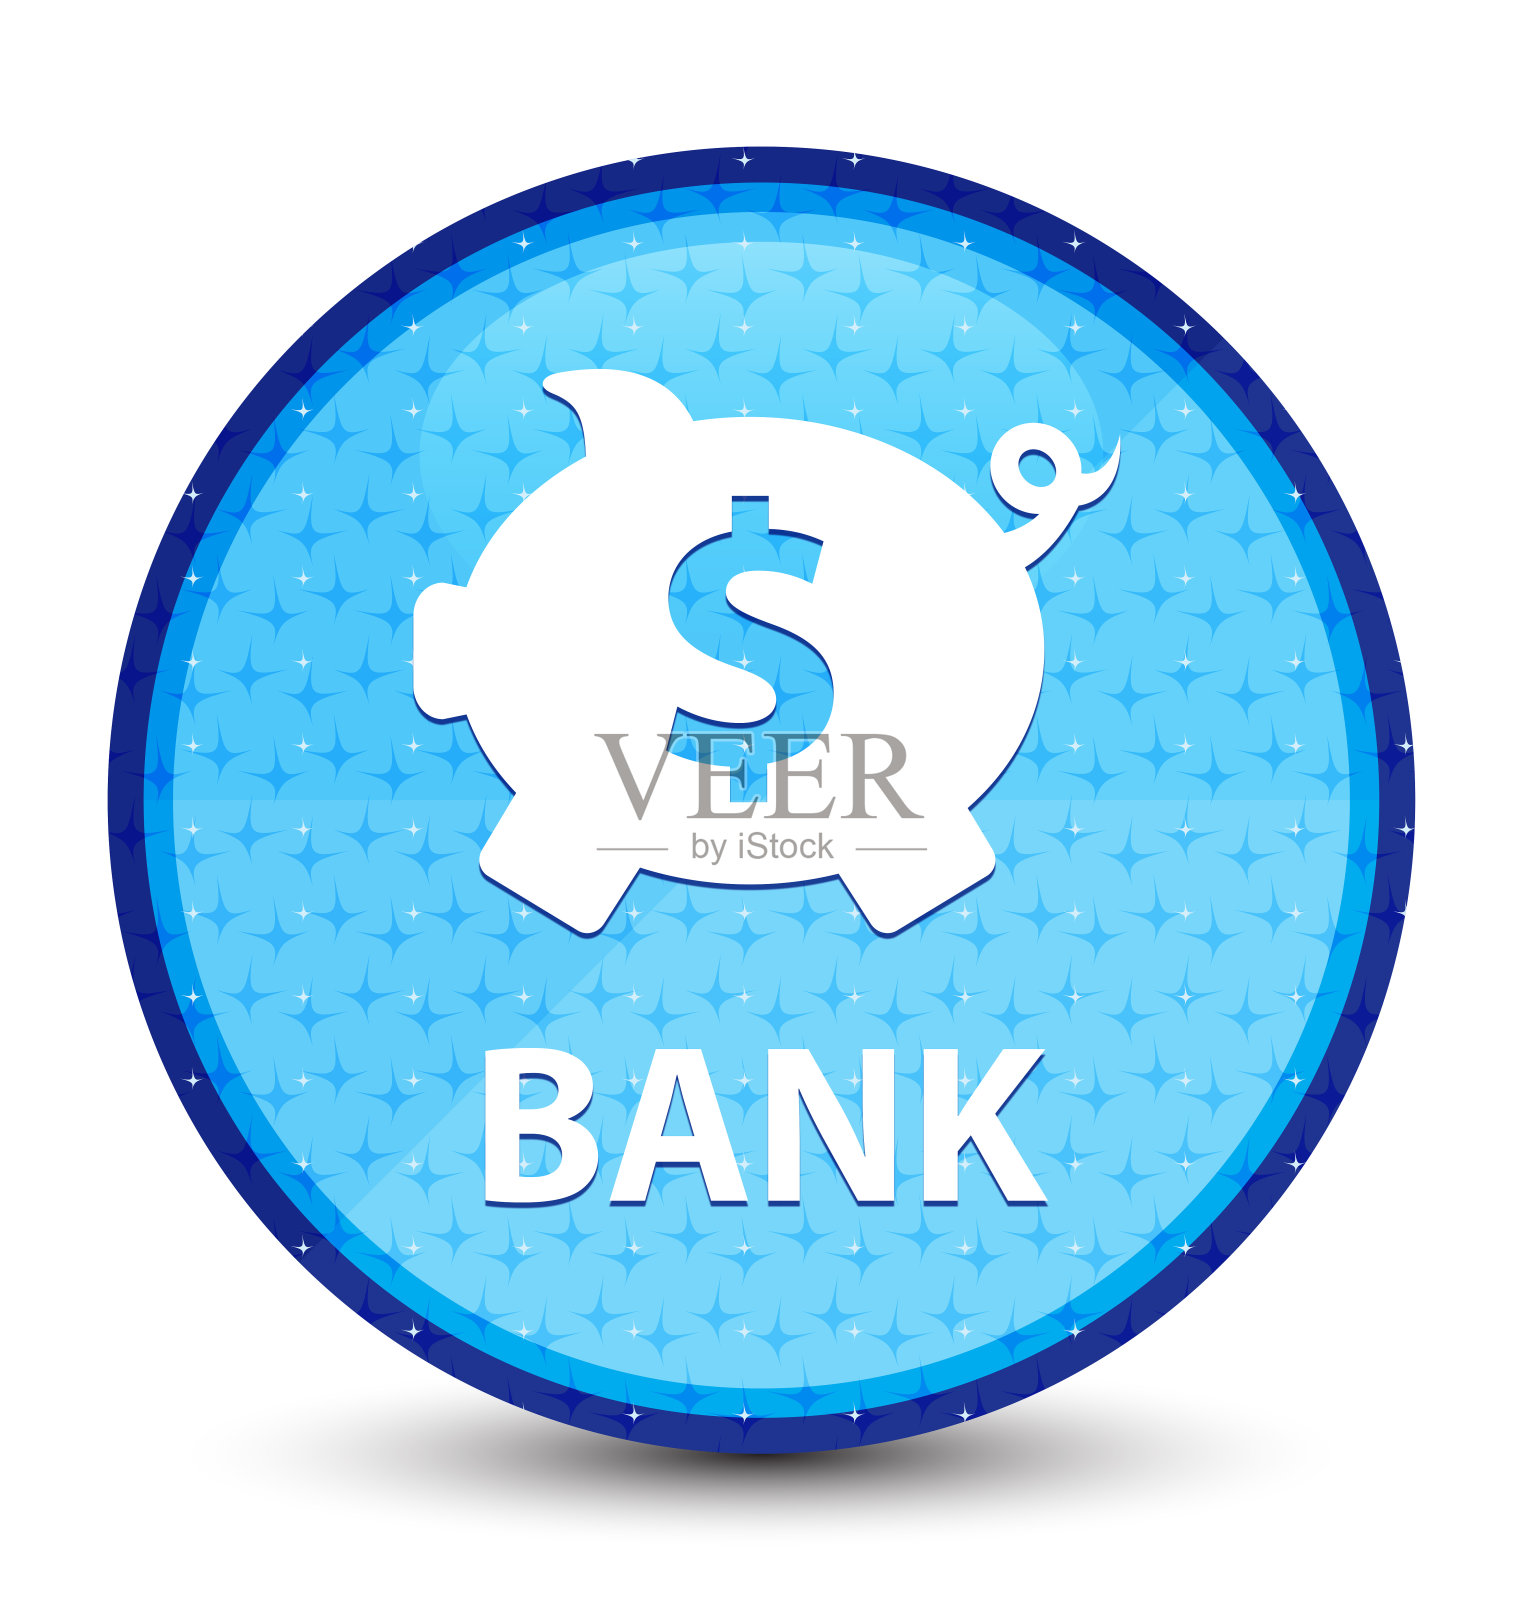 银行(储蓄罐美元符号)星系青蓝色圆形按钮插画图片素材